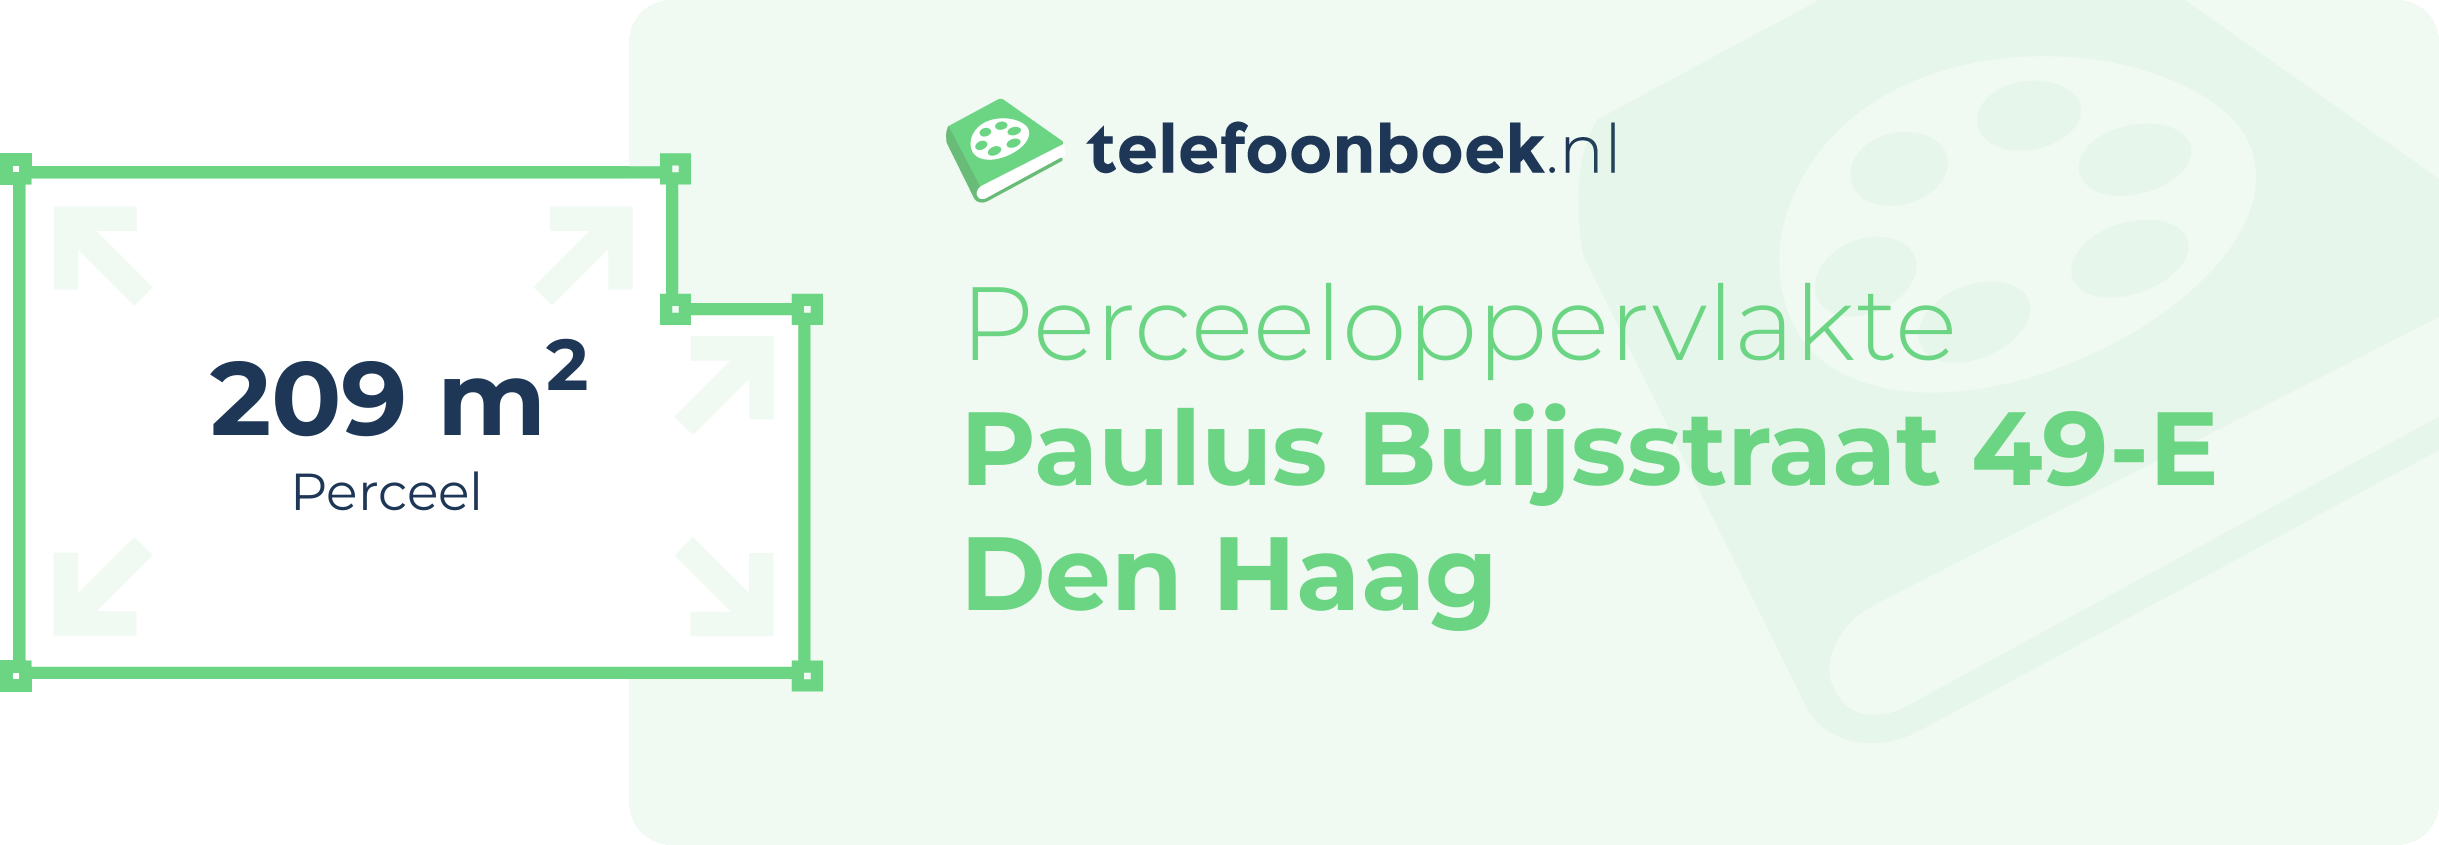 Perceeloppervlakte Paulus Buijsstraat 49-E Den Haag